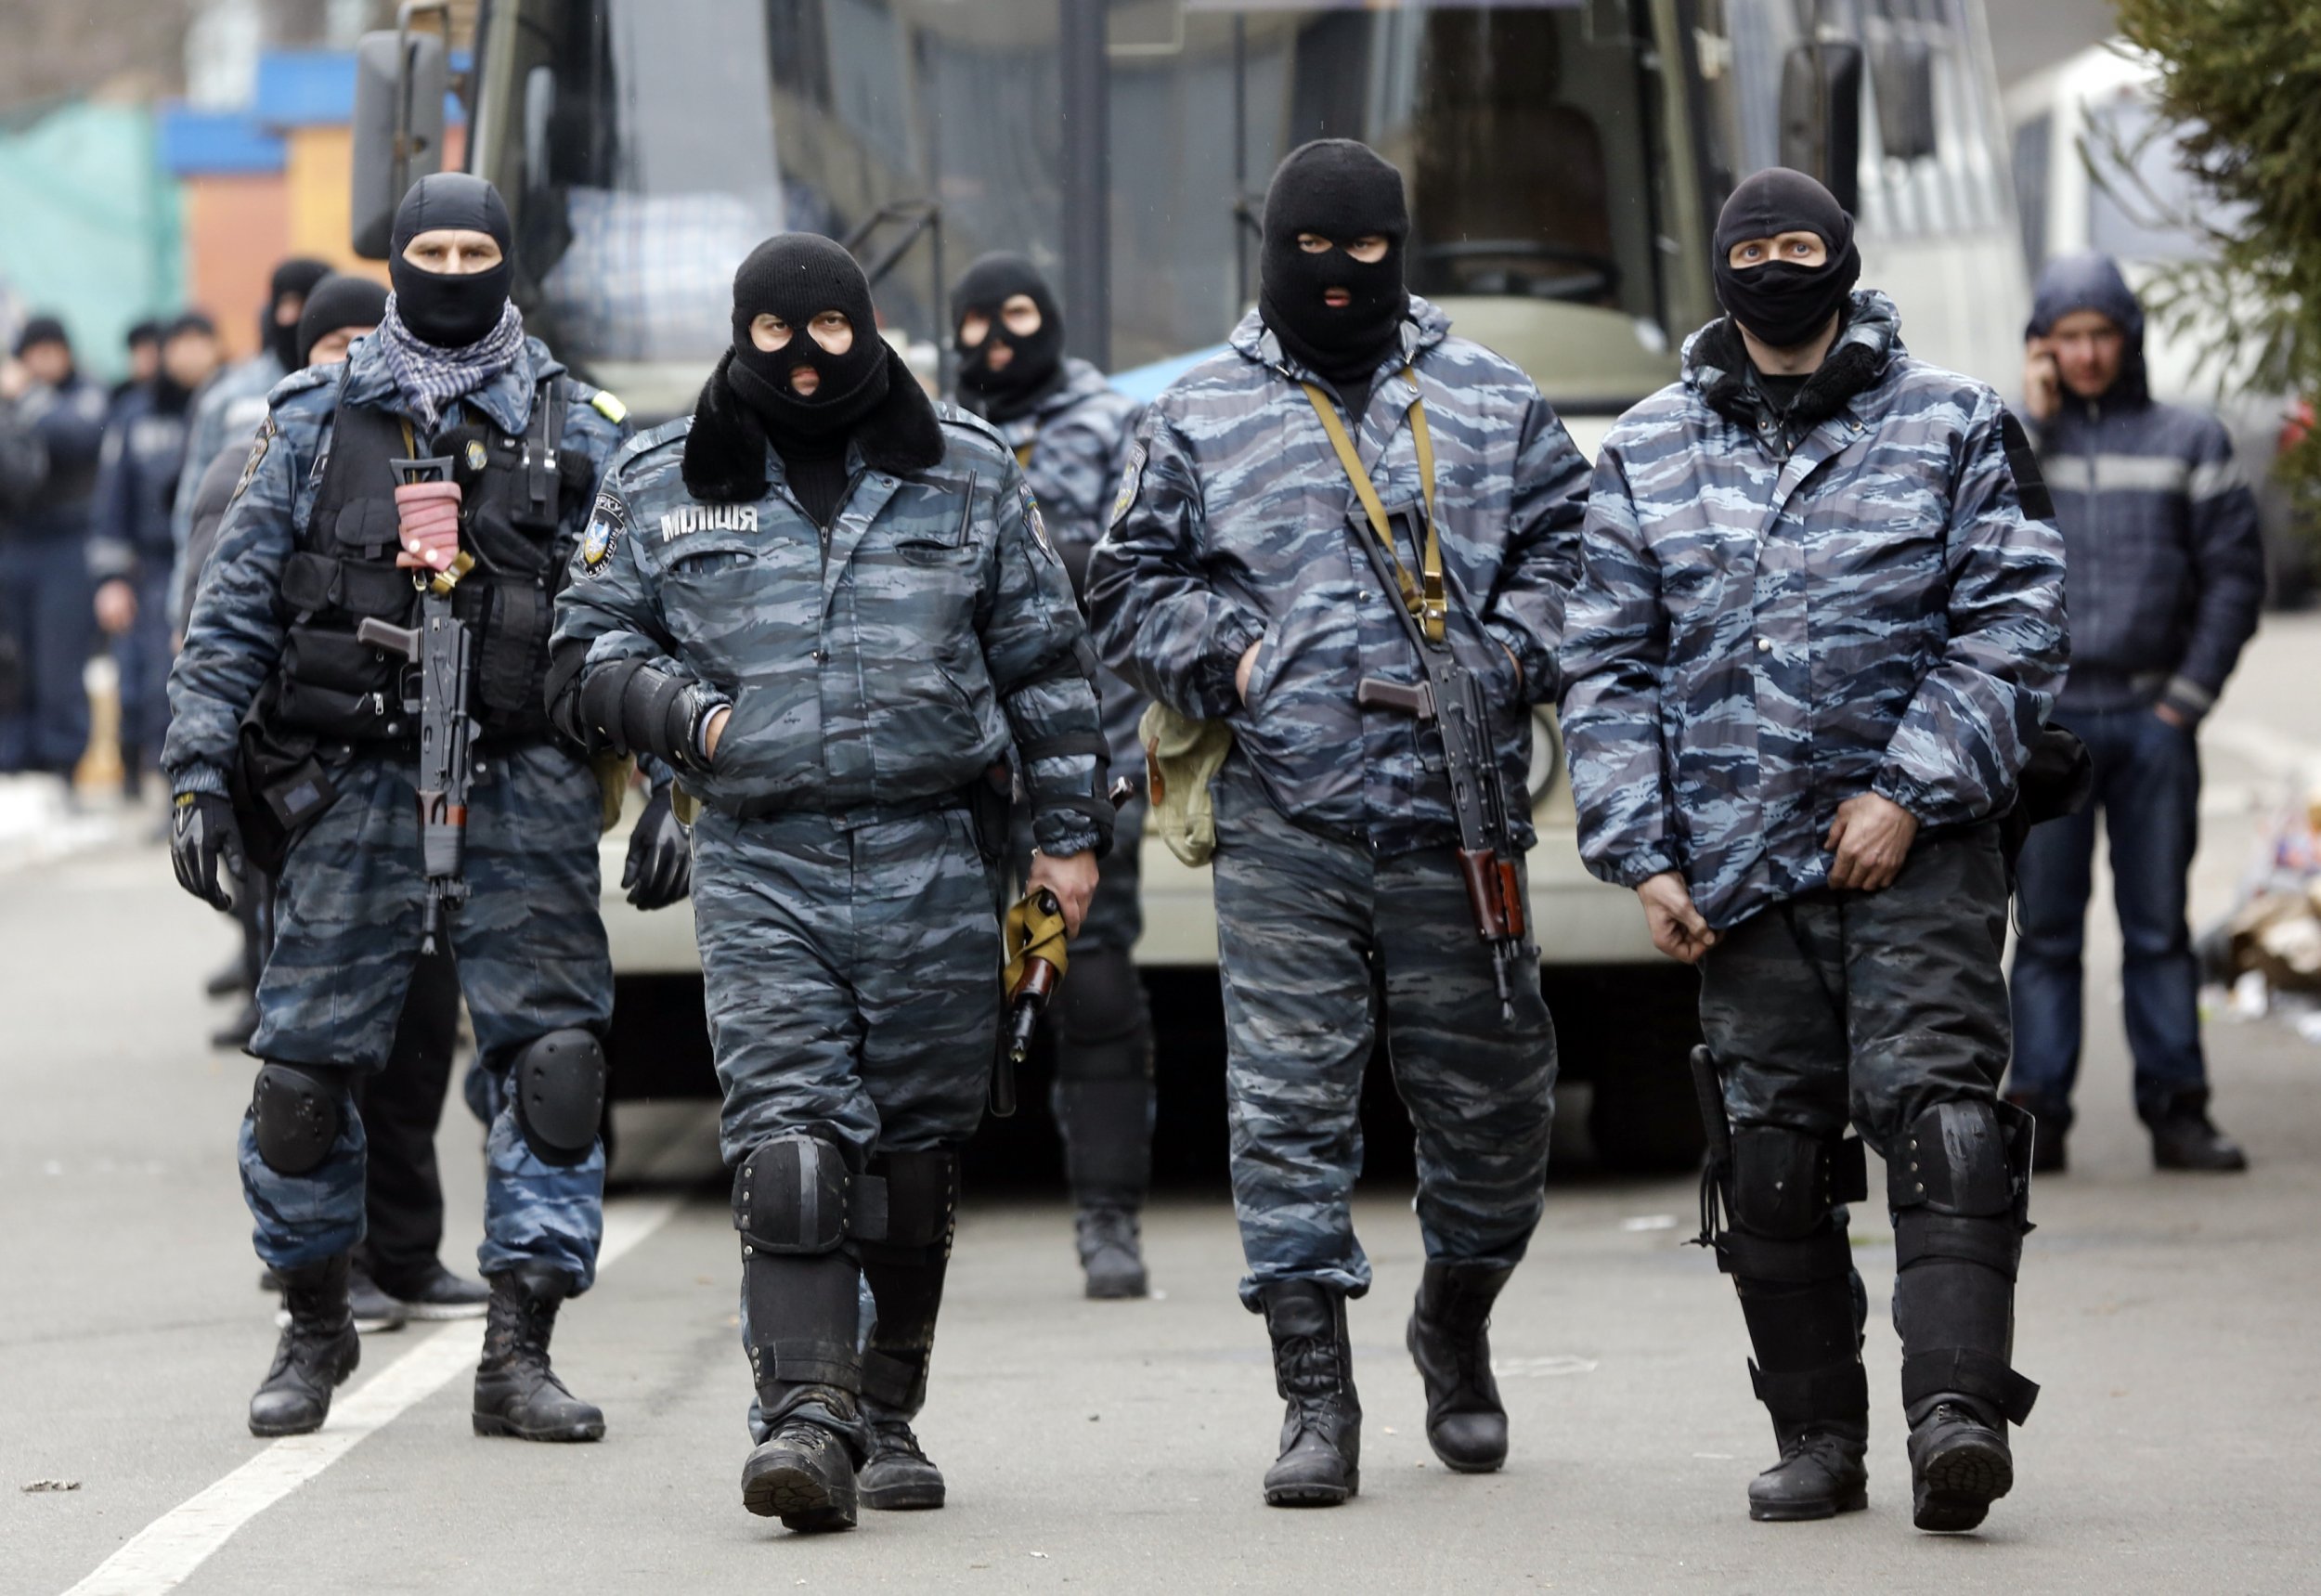 Ukraine riot unit